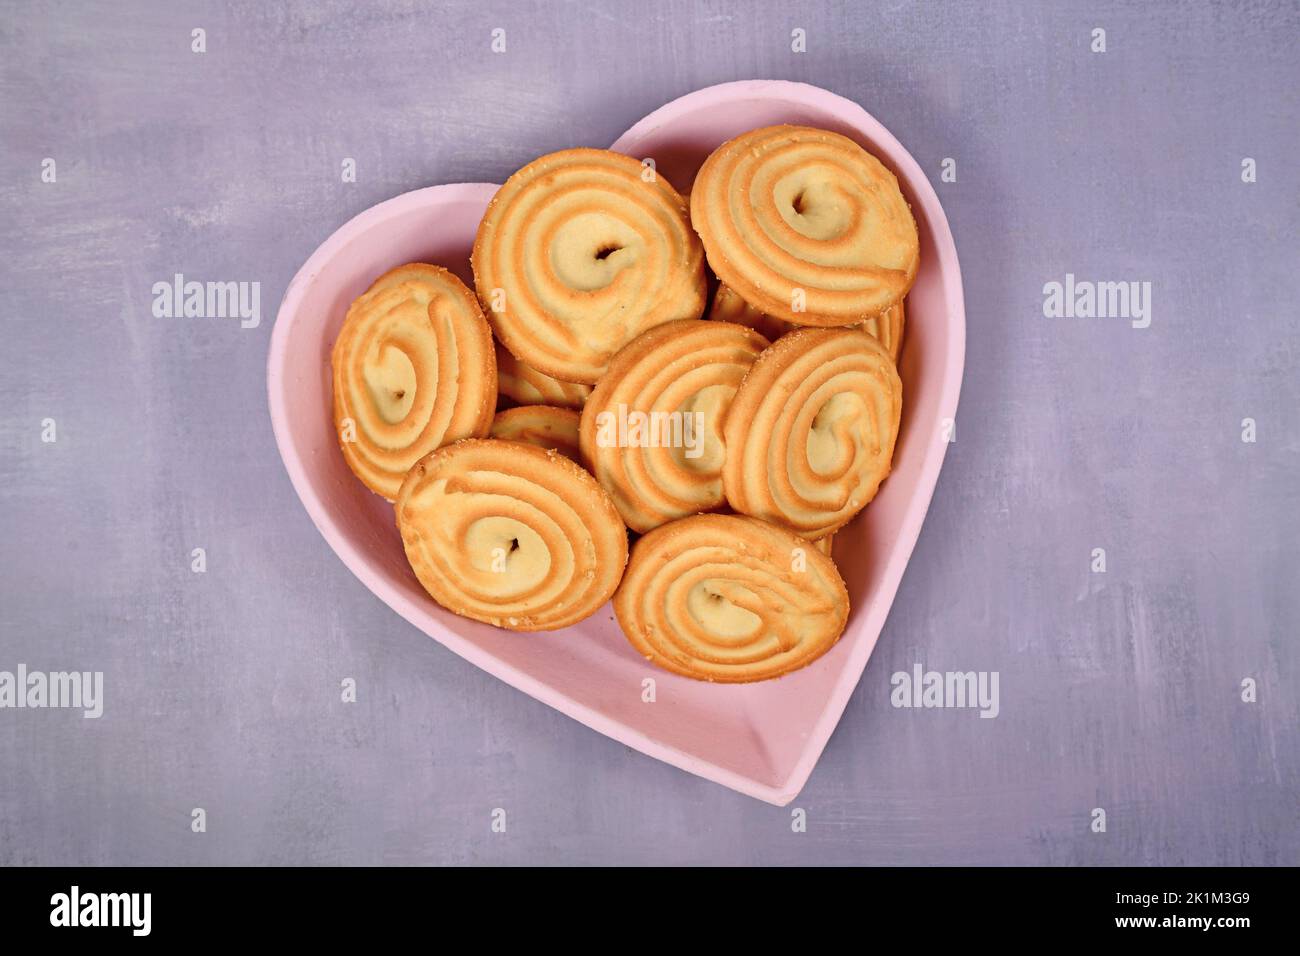 Galletas spritz con forma de anillo redondo llamadas 'Spritzgeback', un tipo de galletas de mantequilla alemana Foto de stock